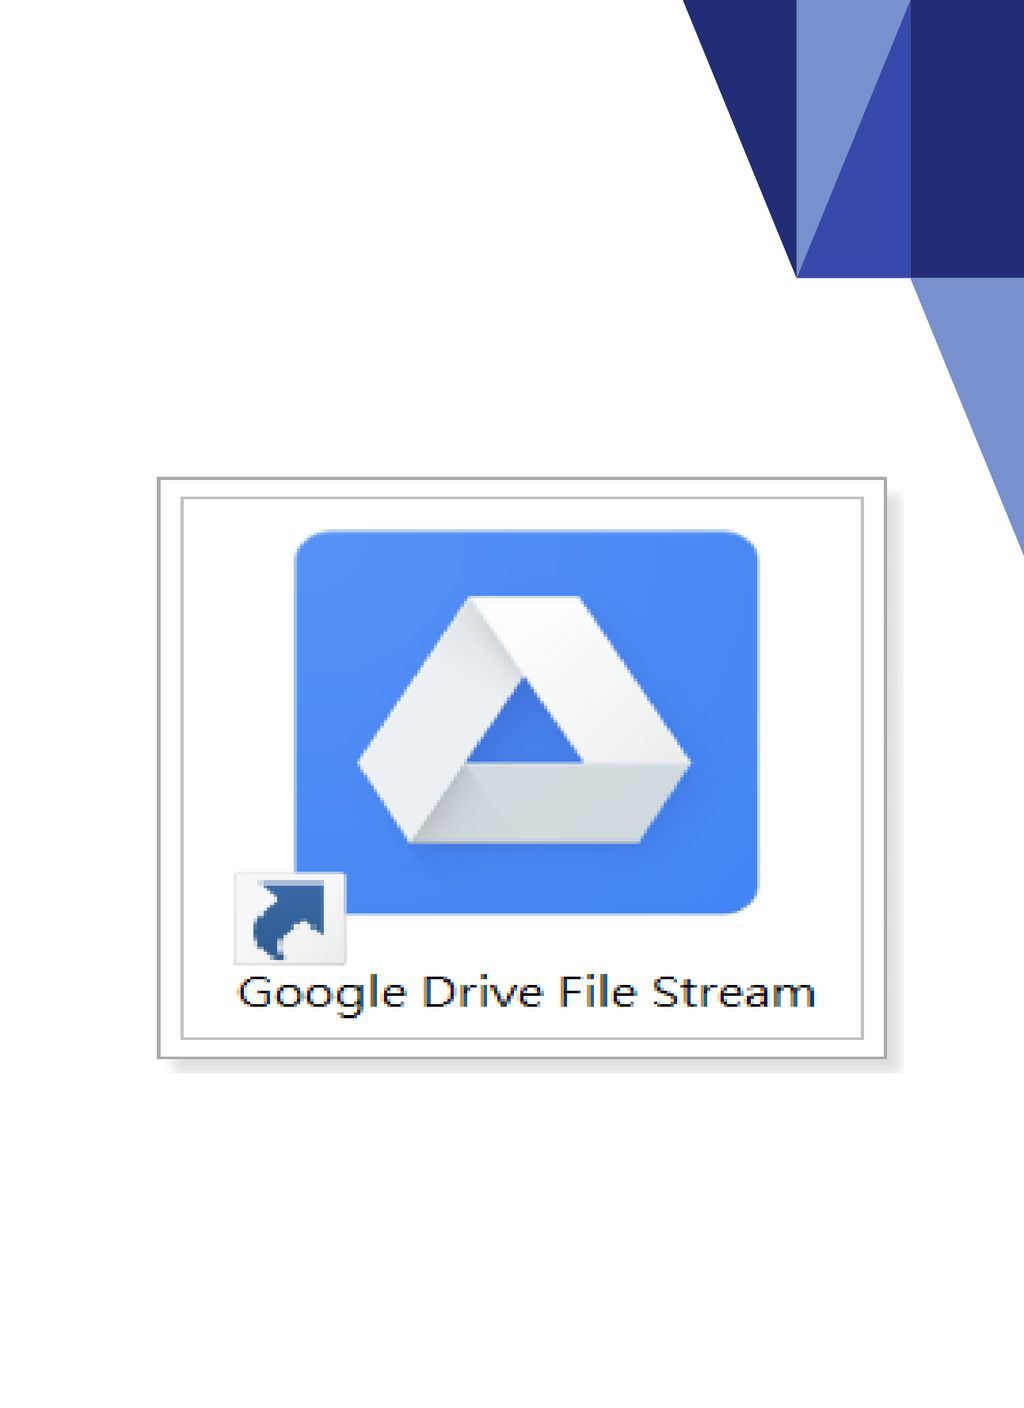 Google drive file stream cloud icon